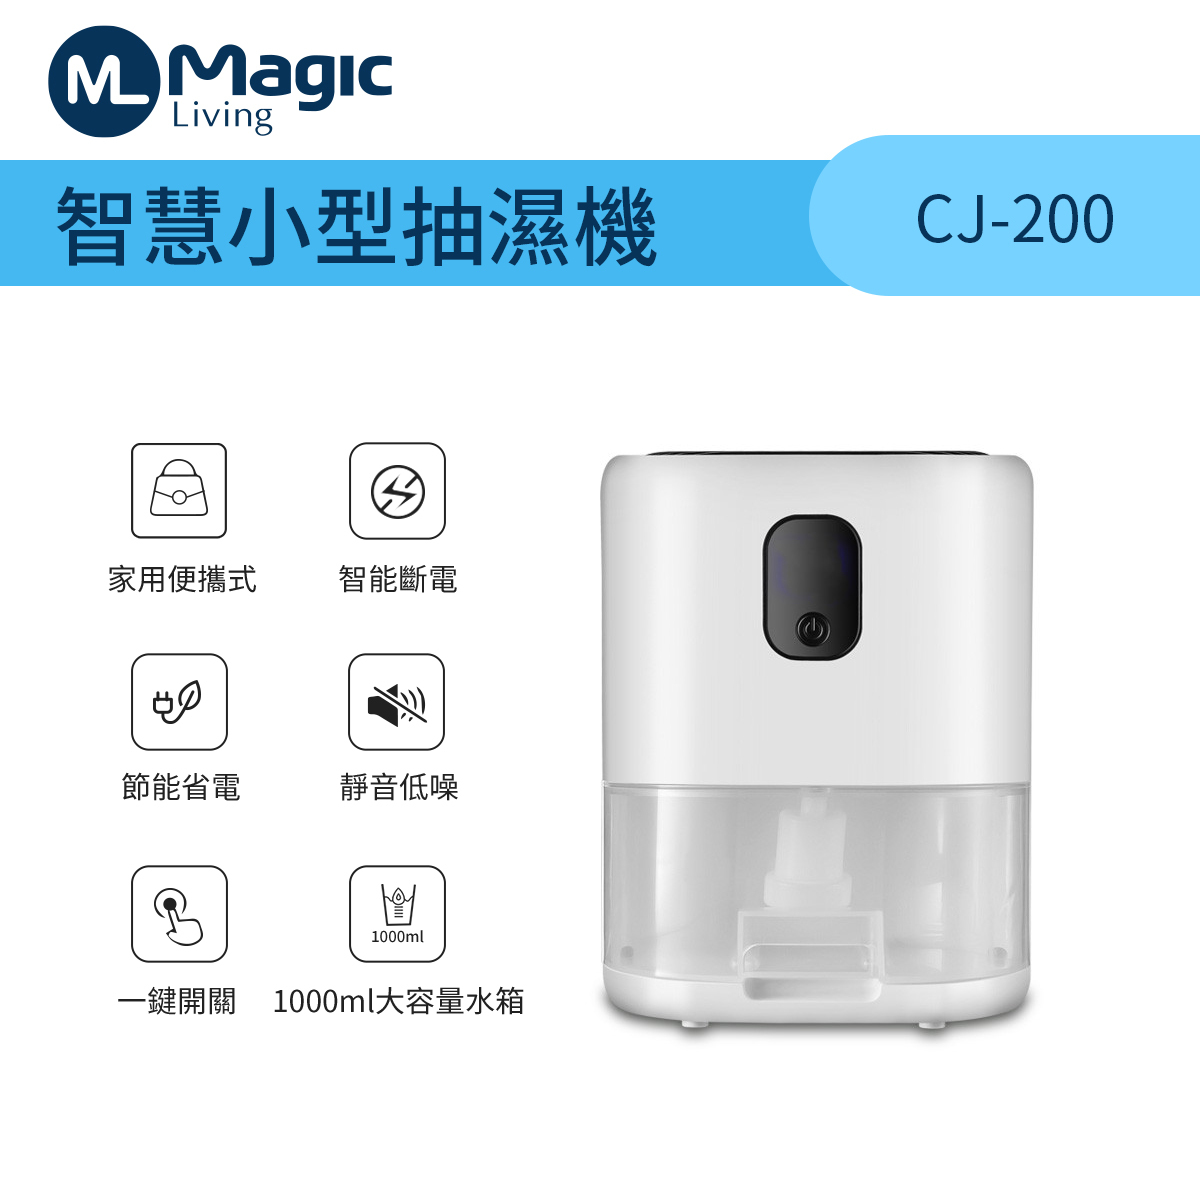 Smart small dehumidifier CJ-200